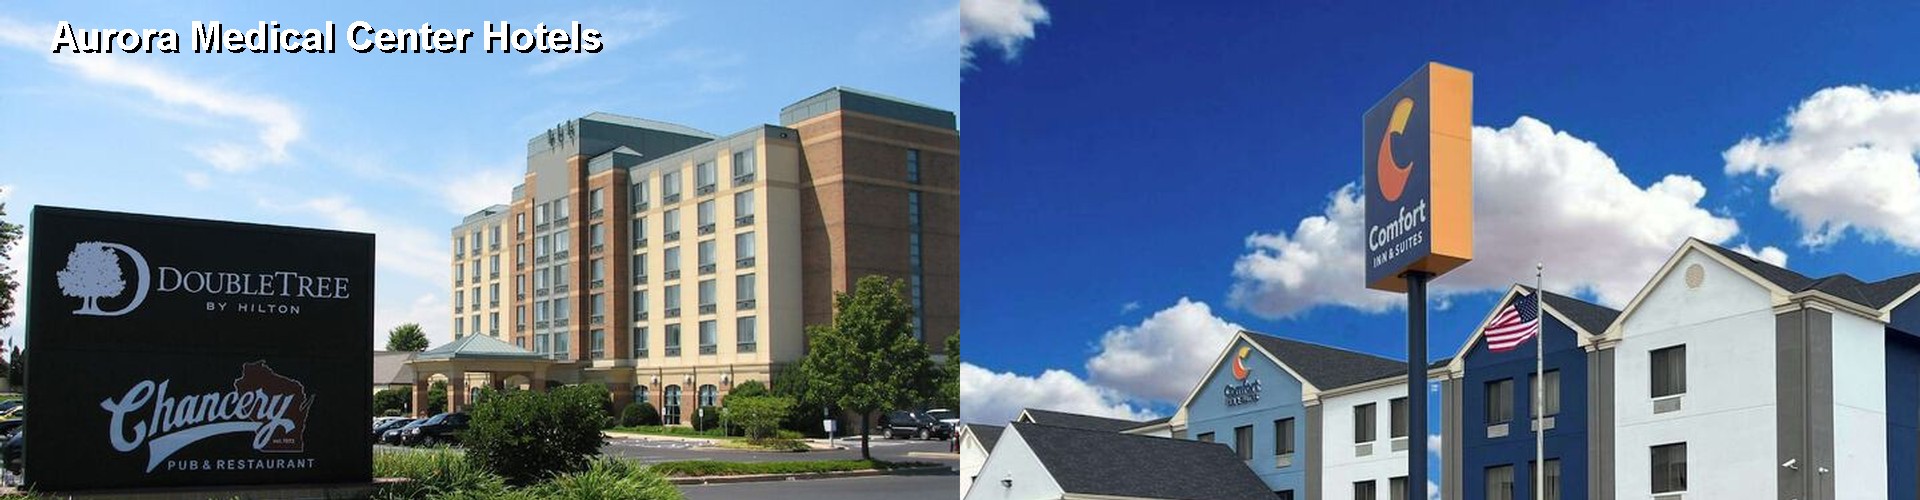 5 Best Hotels near Aurora Medical Center